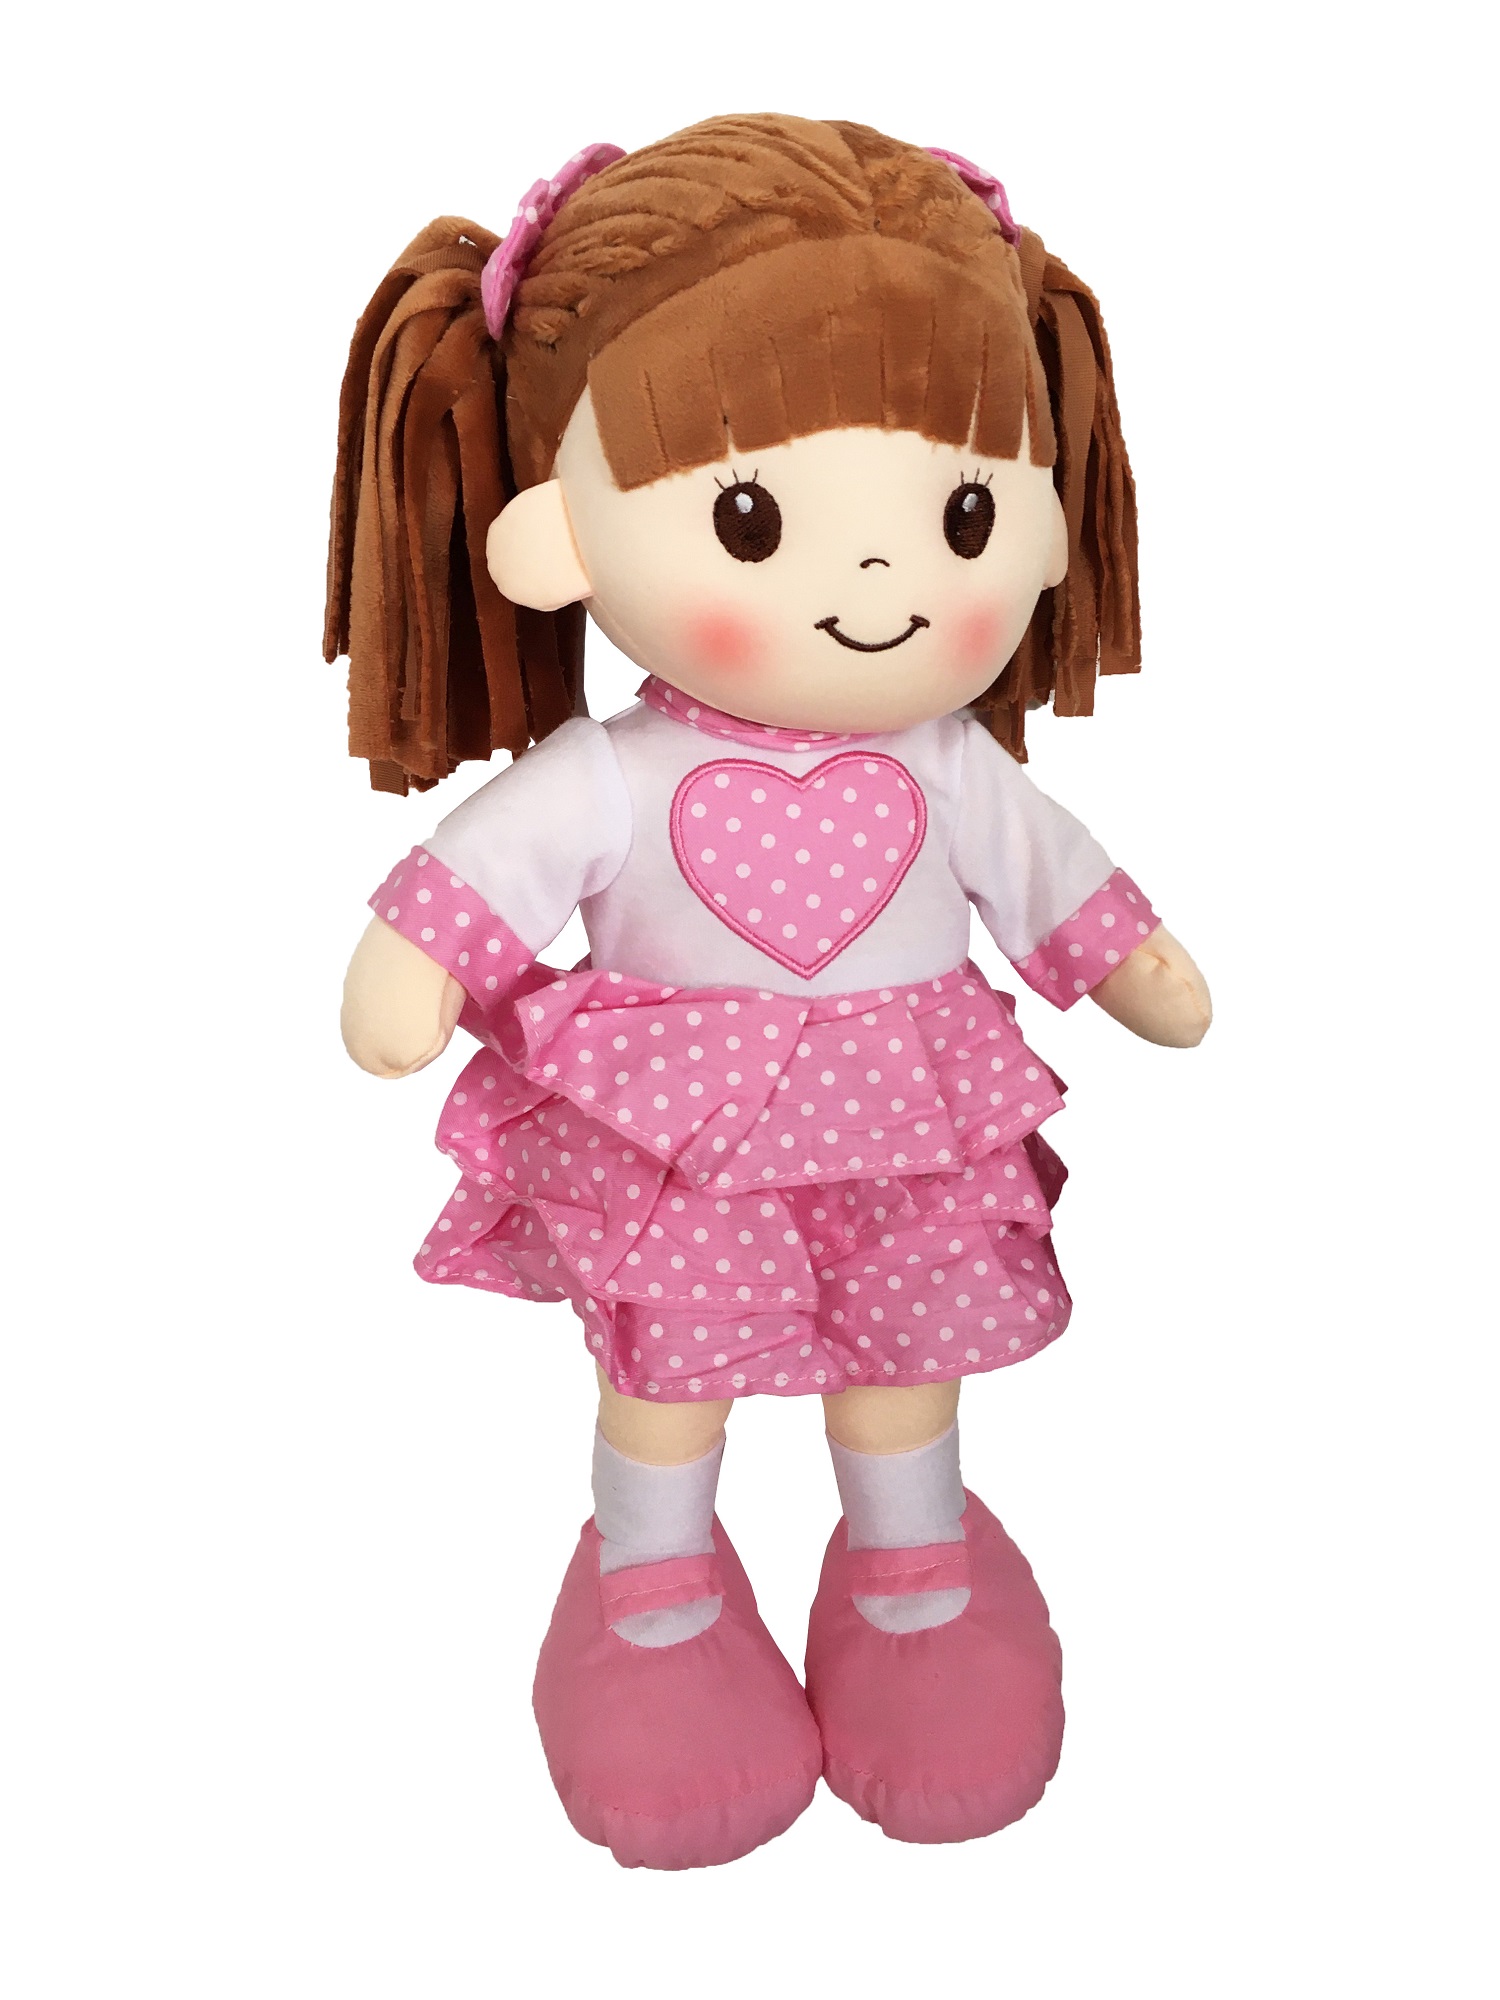  Muñeca de Trapo Personalizada - Muñecas de Trapo Vestido  Terciopelo, Regalo muñeca Trapo Bebe con su Nombre, tamaño 25 cm. en Azul o  Rosa - Muñeca Bebe 1 año y más (